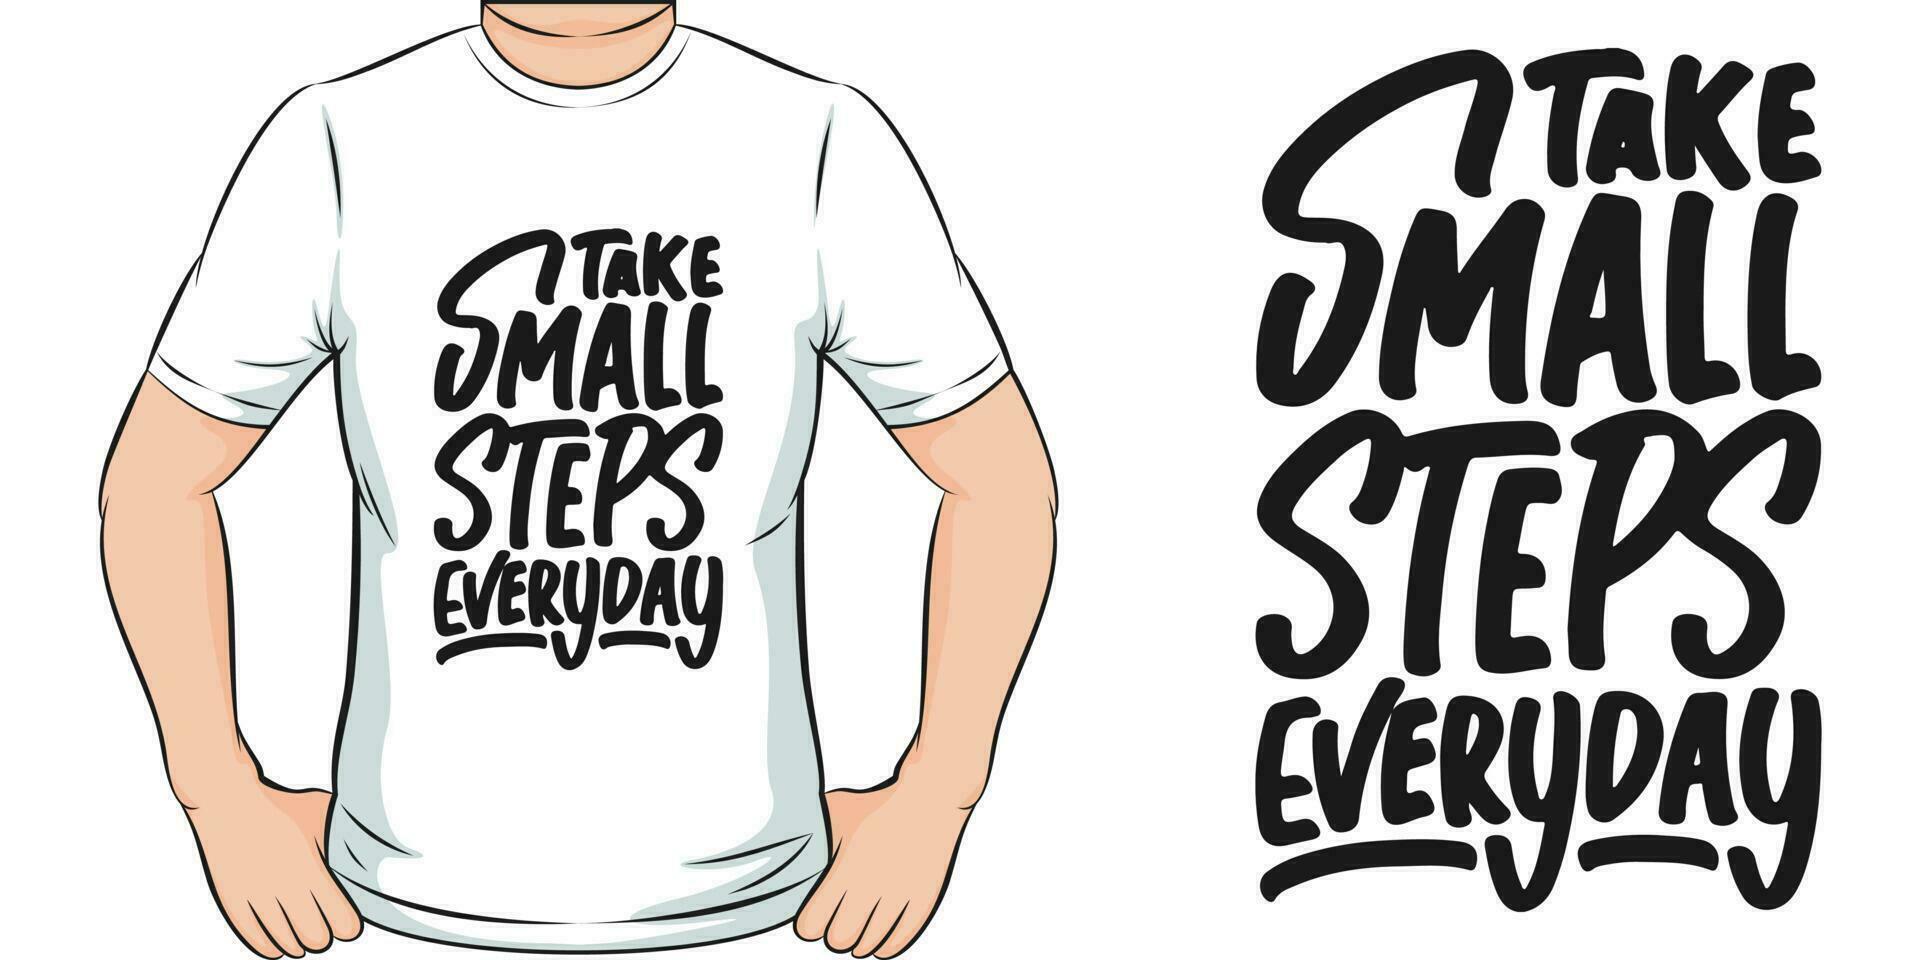 nemen klein stappen elke dag, motiverende citaat t-shirt ontwerp. vector